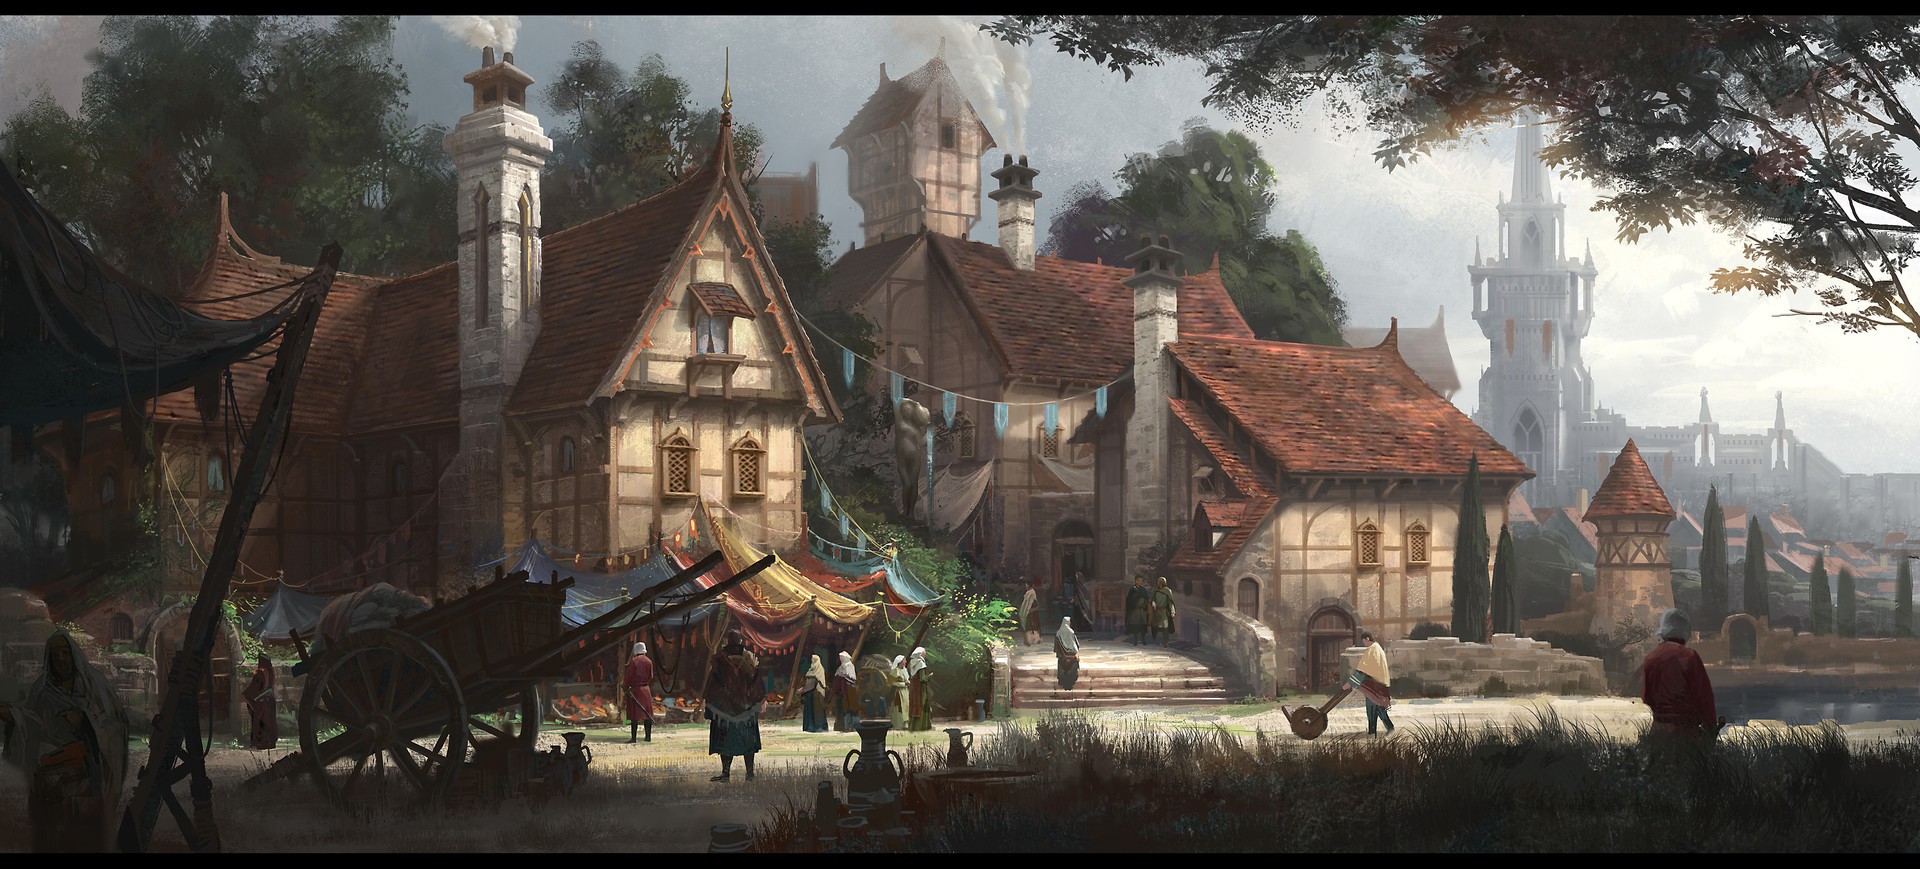 middle ages village